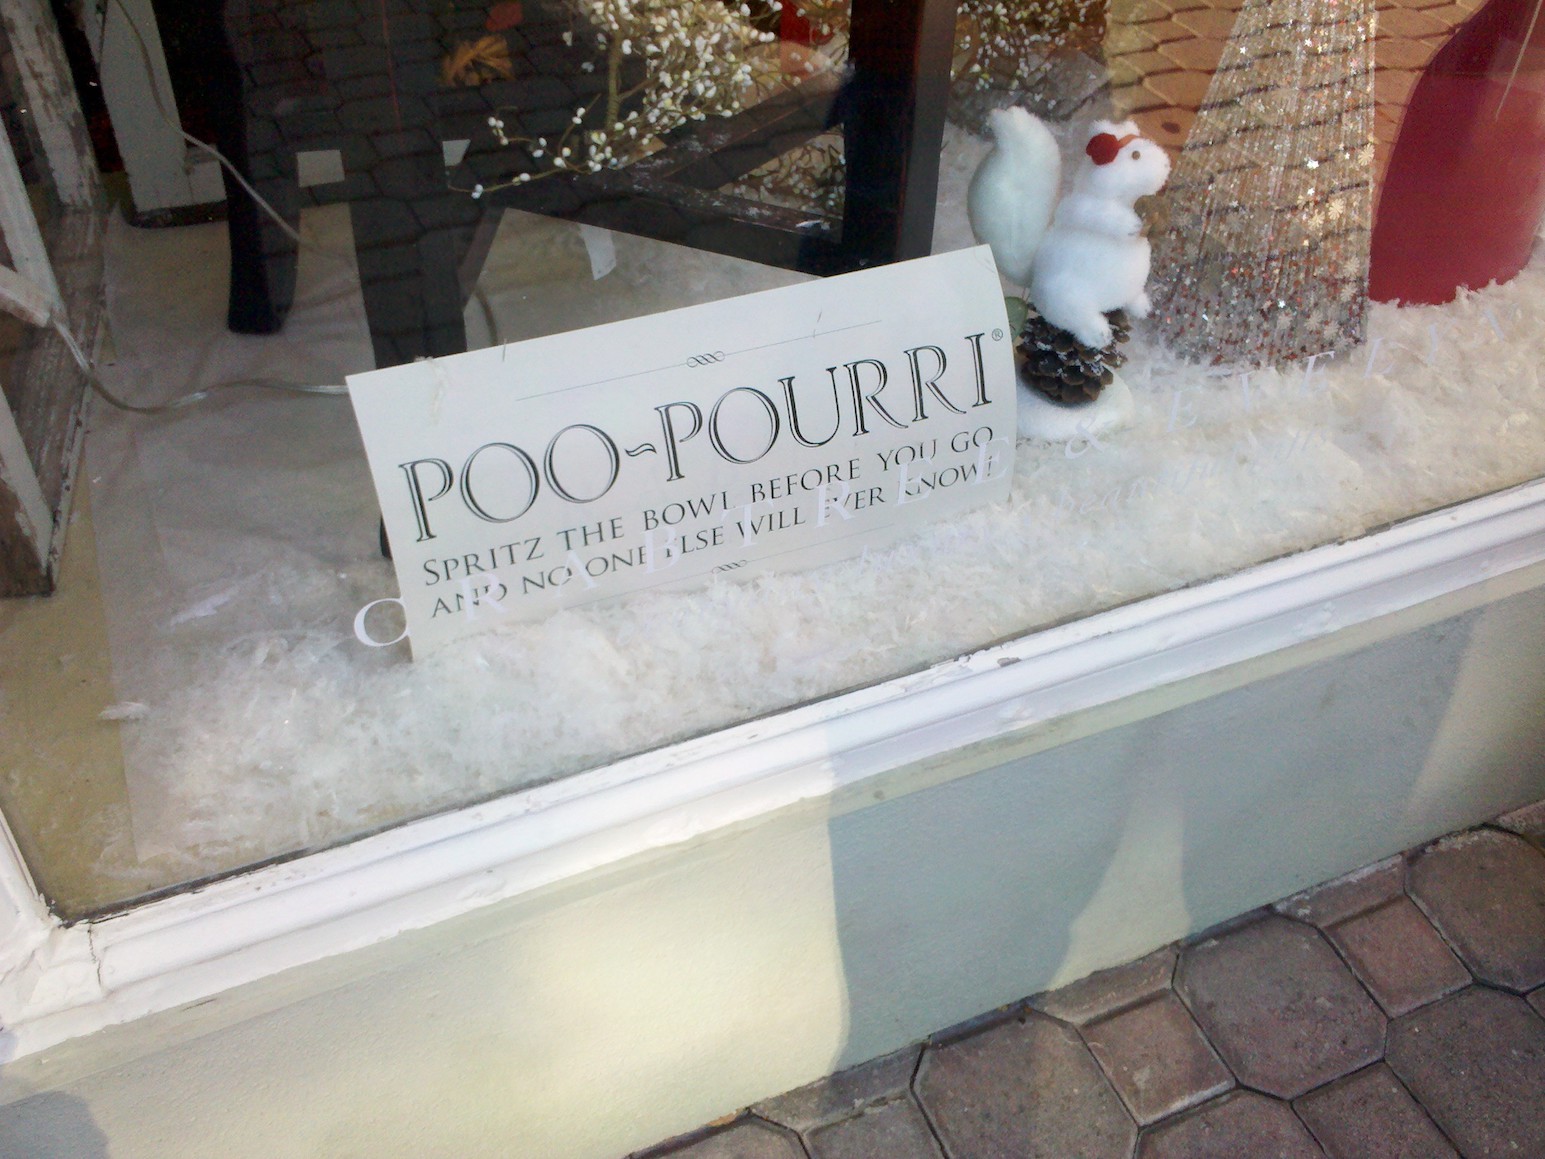 Amazon上的熱銷品牌Poo-Pourri，品牌故事怎麼說？